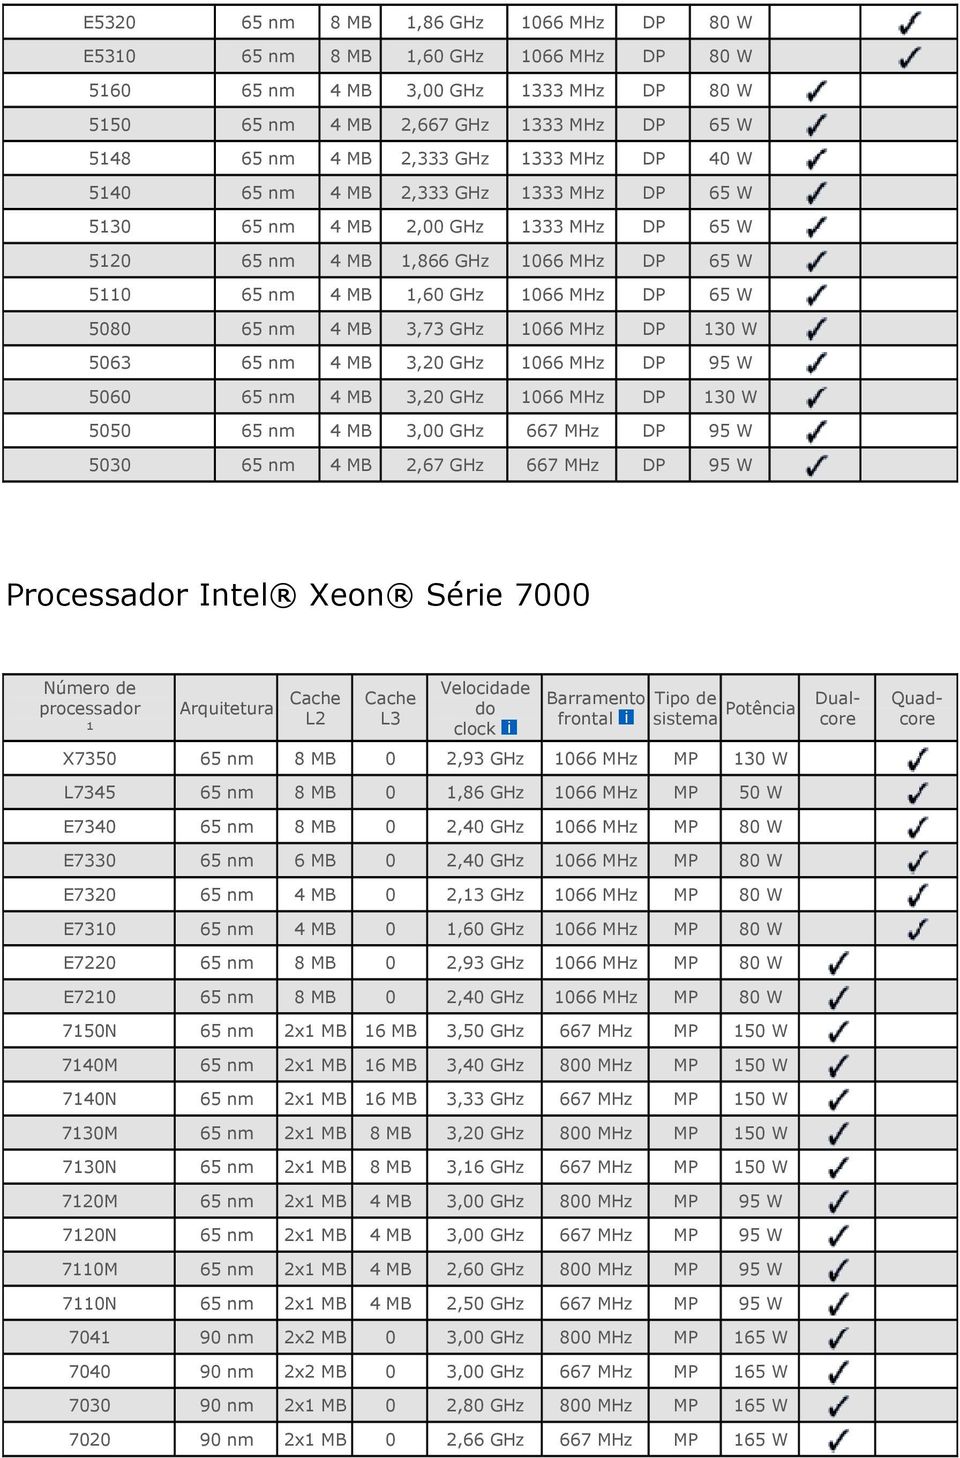 processador ¹ Arquitetura L3 do Tipo de sistema Potência X7350 8 0 2,93 1066 MP 130 W L7345 8 0 1,86 1066 MP 50 W E7340 8 0 2,40 1066 MP 80 W E7330 6 0 2,40 1066 MP 80 W E7320 4 0 2,13 1066 MP 80 W